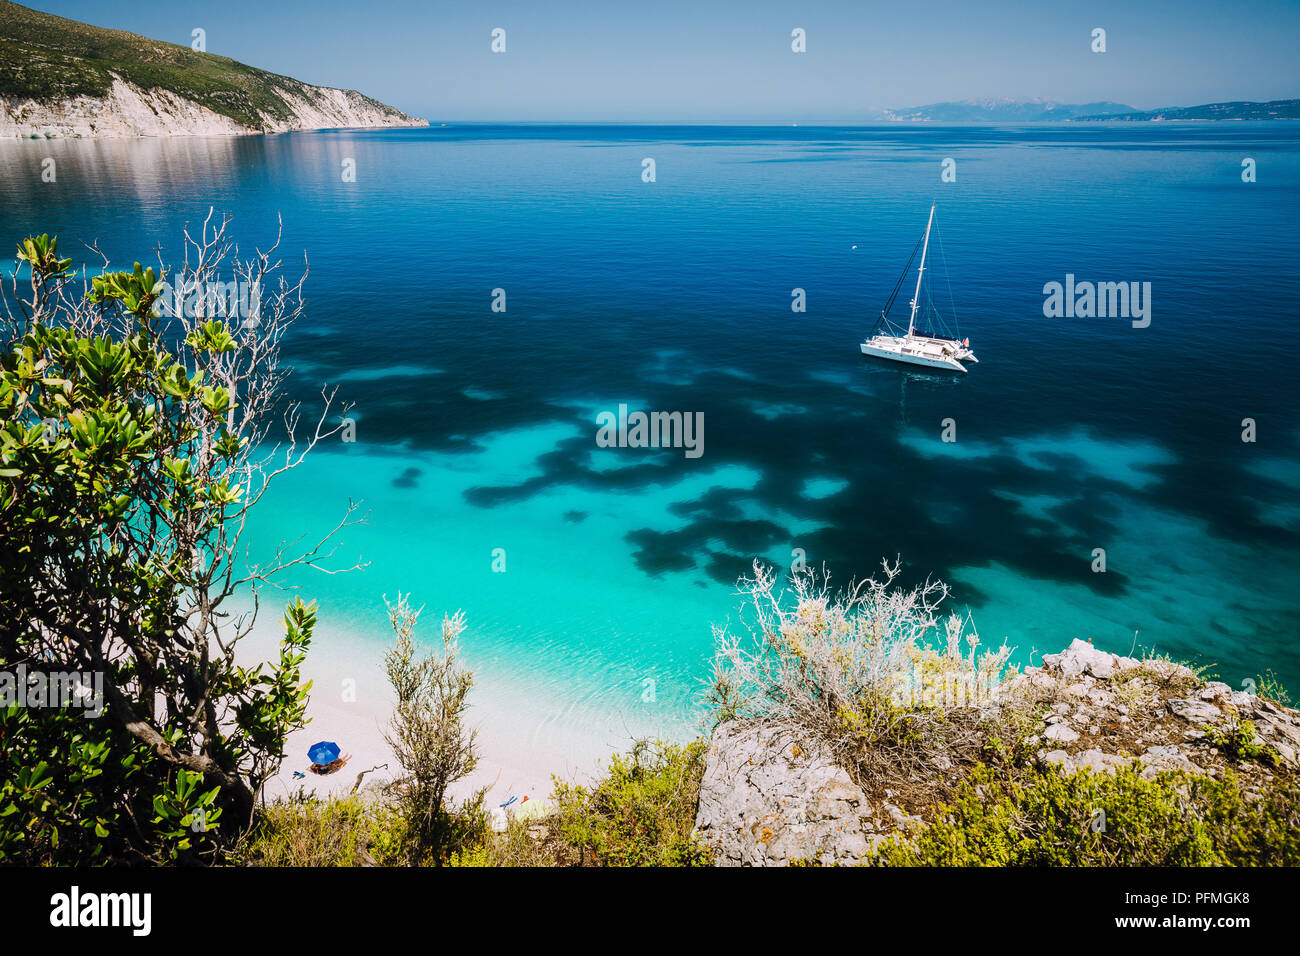 Fteri beach, île de Céphalonie Céphalonie, Grèce. Yacht à voile blanc bleu clair l'eau de mer. Les touristes sur plage de sable près de lagune azure Banque D'Images